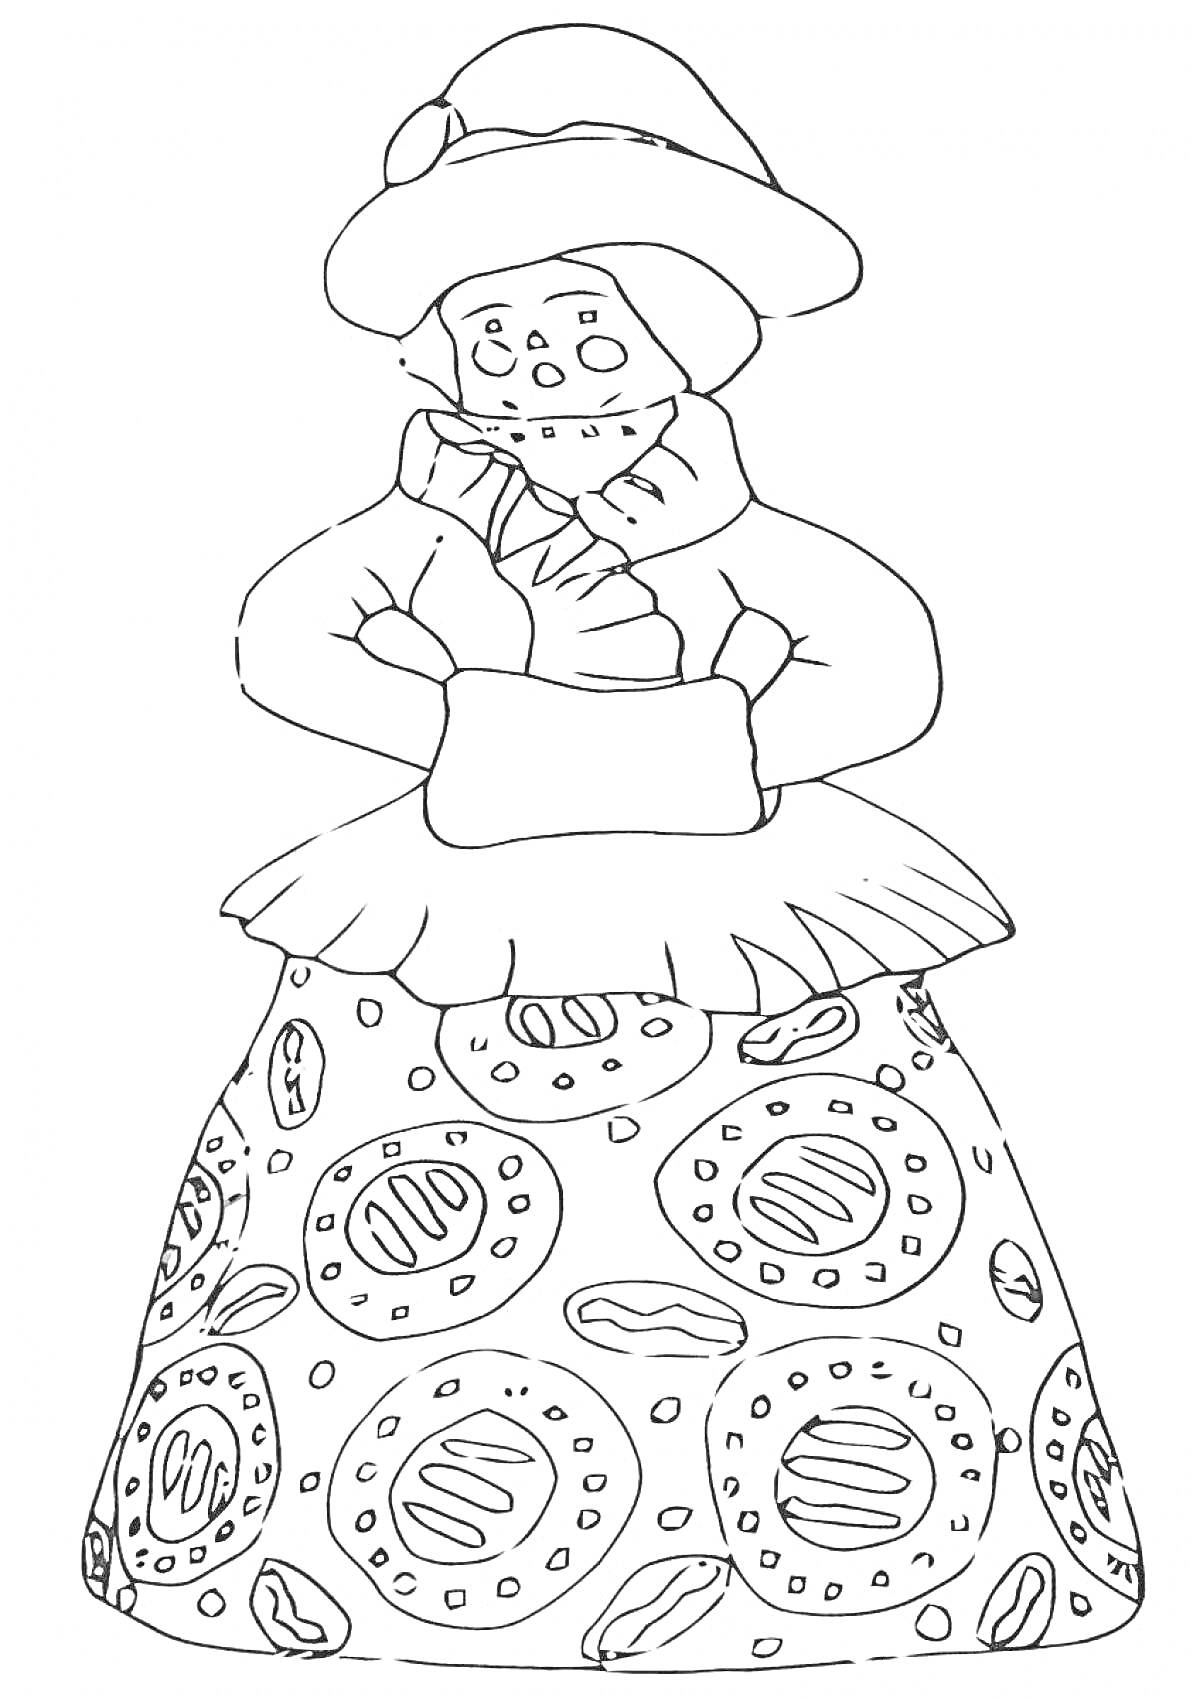 Раскраска Дымковская барышня в шляпе и пышной юбке с узорами